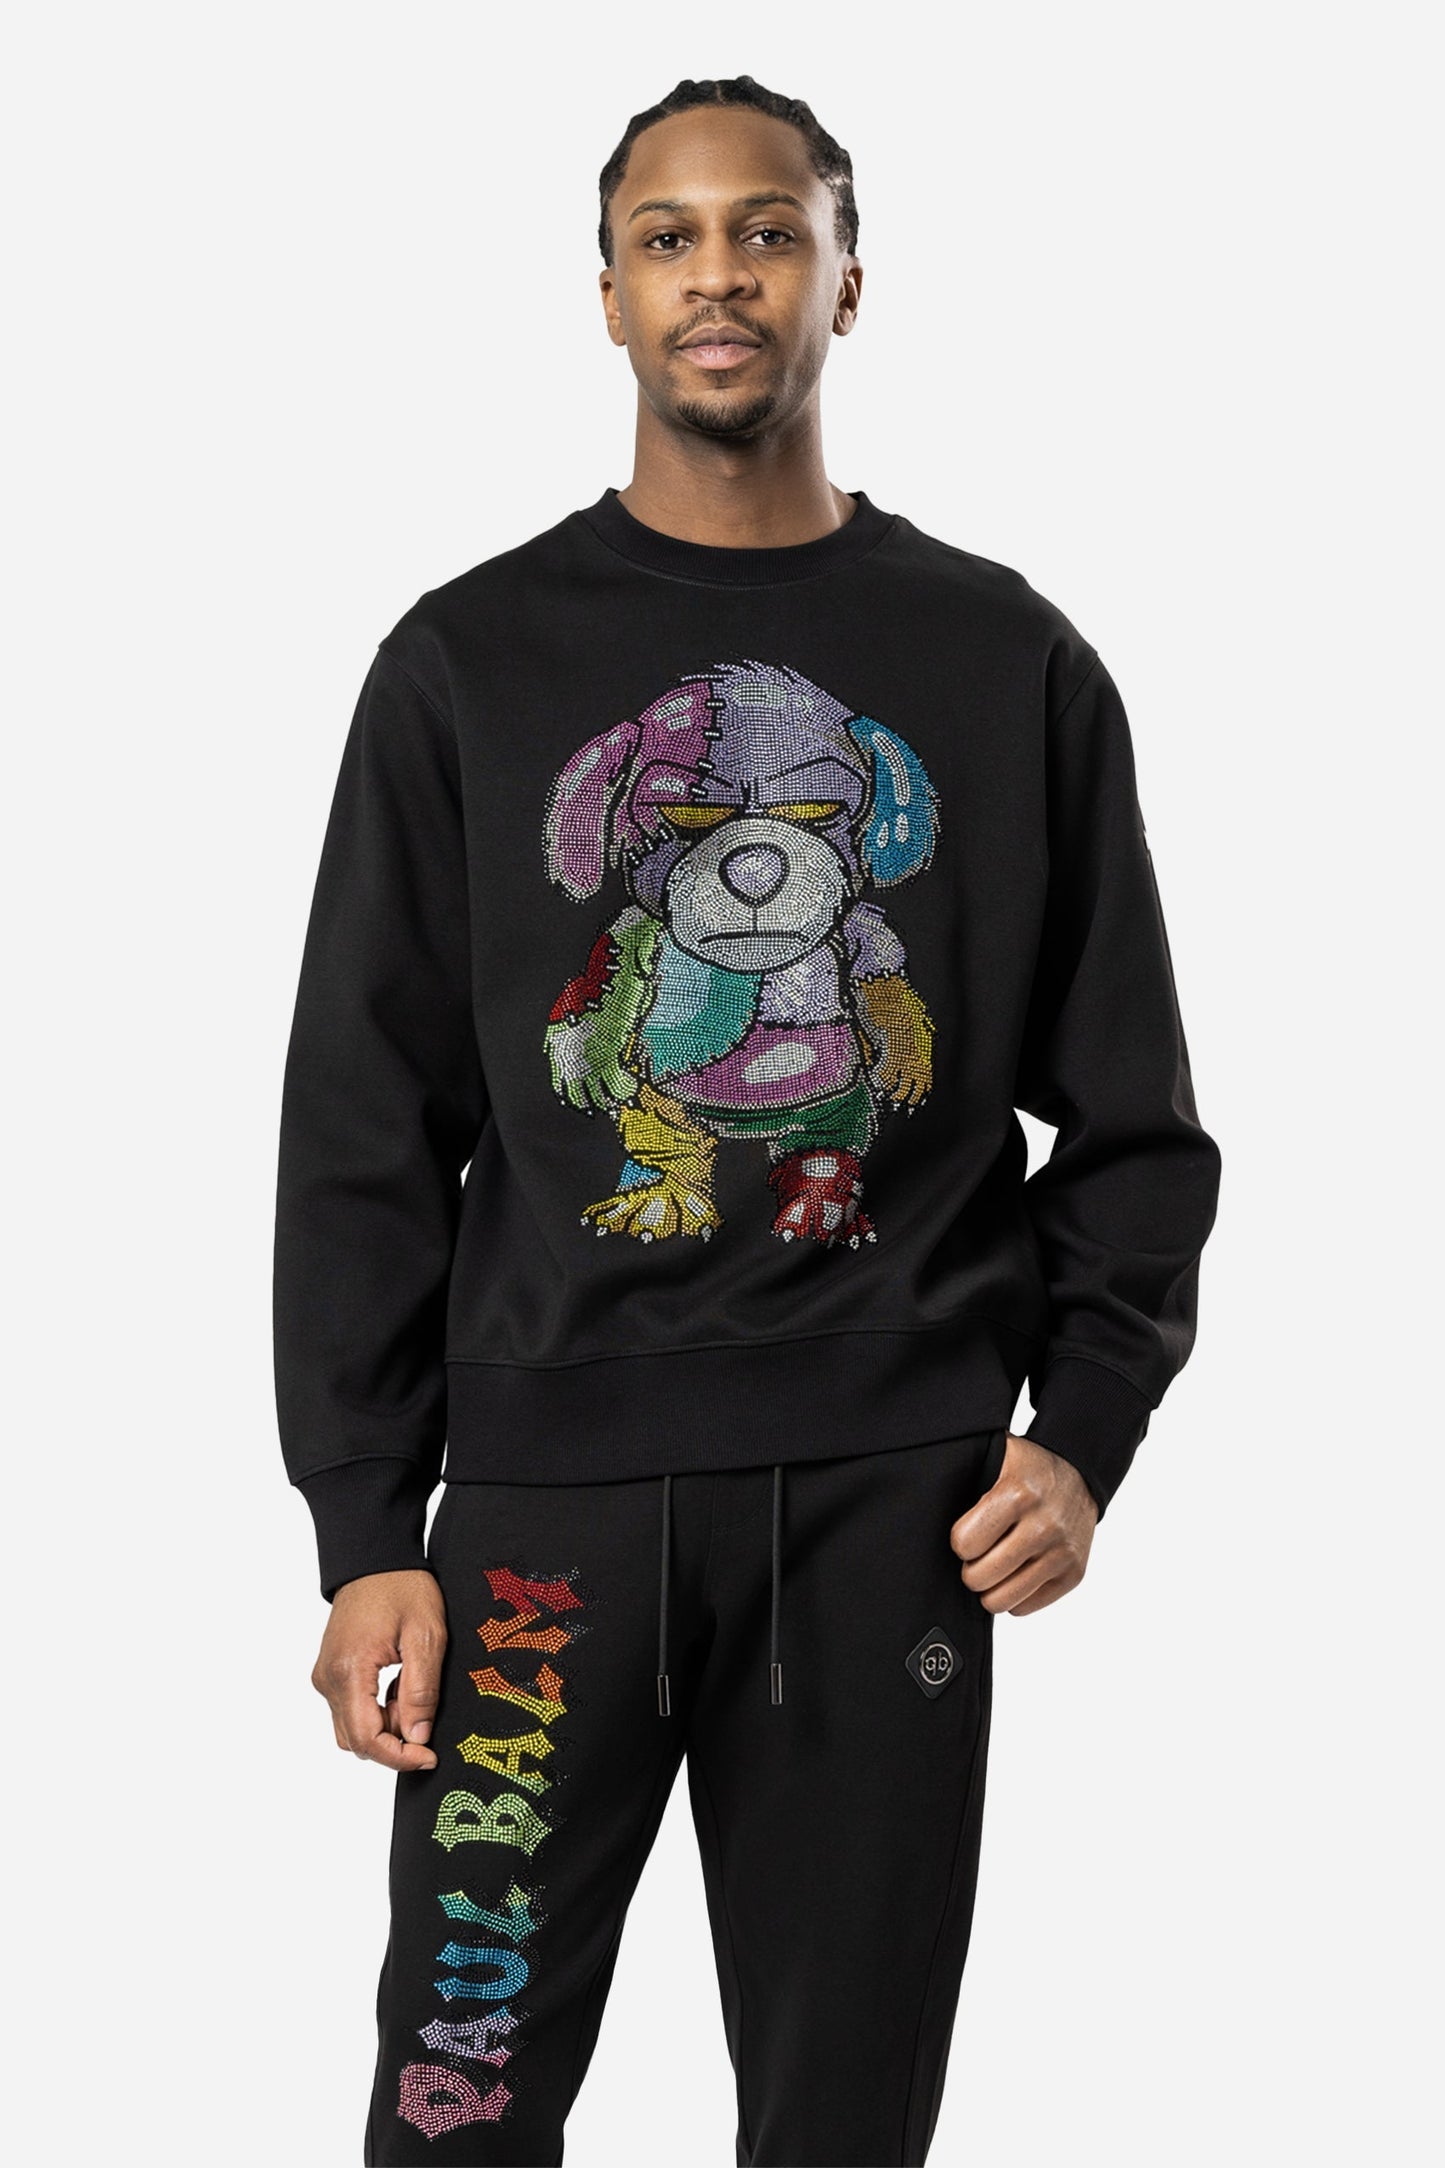 Crystal Rainbow Teddy Sweatshirt - Limited to 300